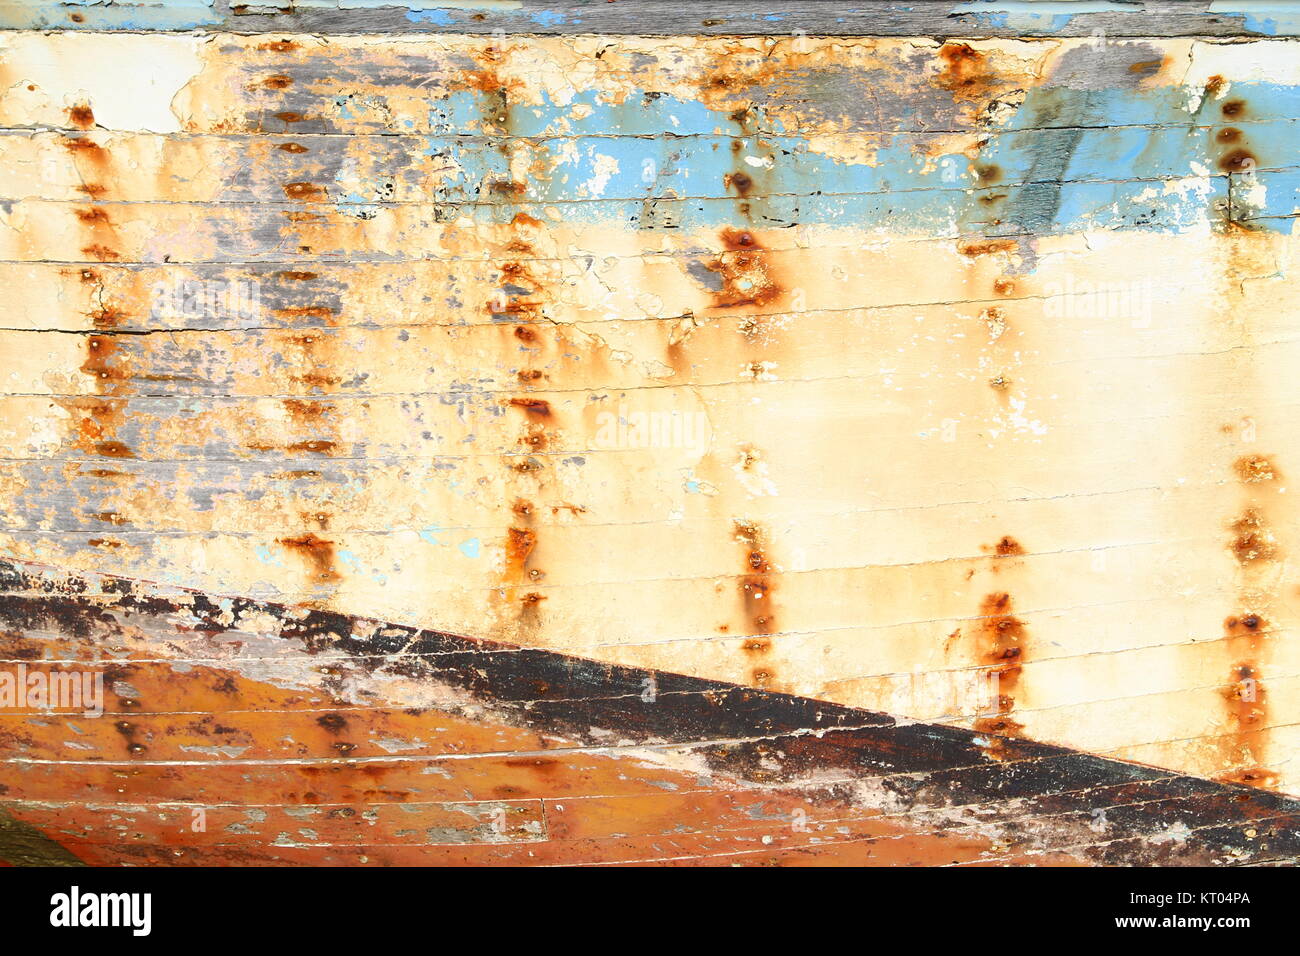 Hintergrund: farbige, verwitterte Planken eines Schiffswracks Foto Stock